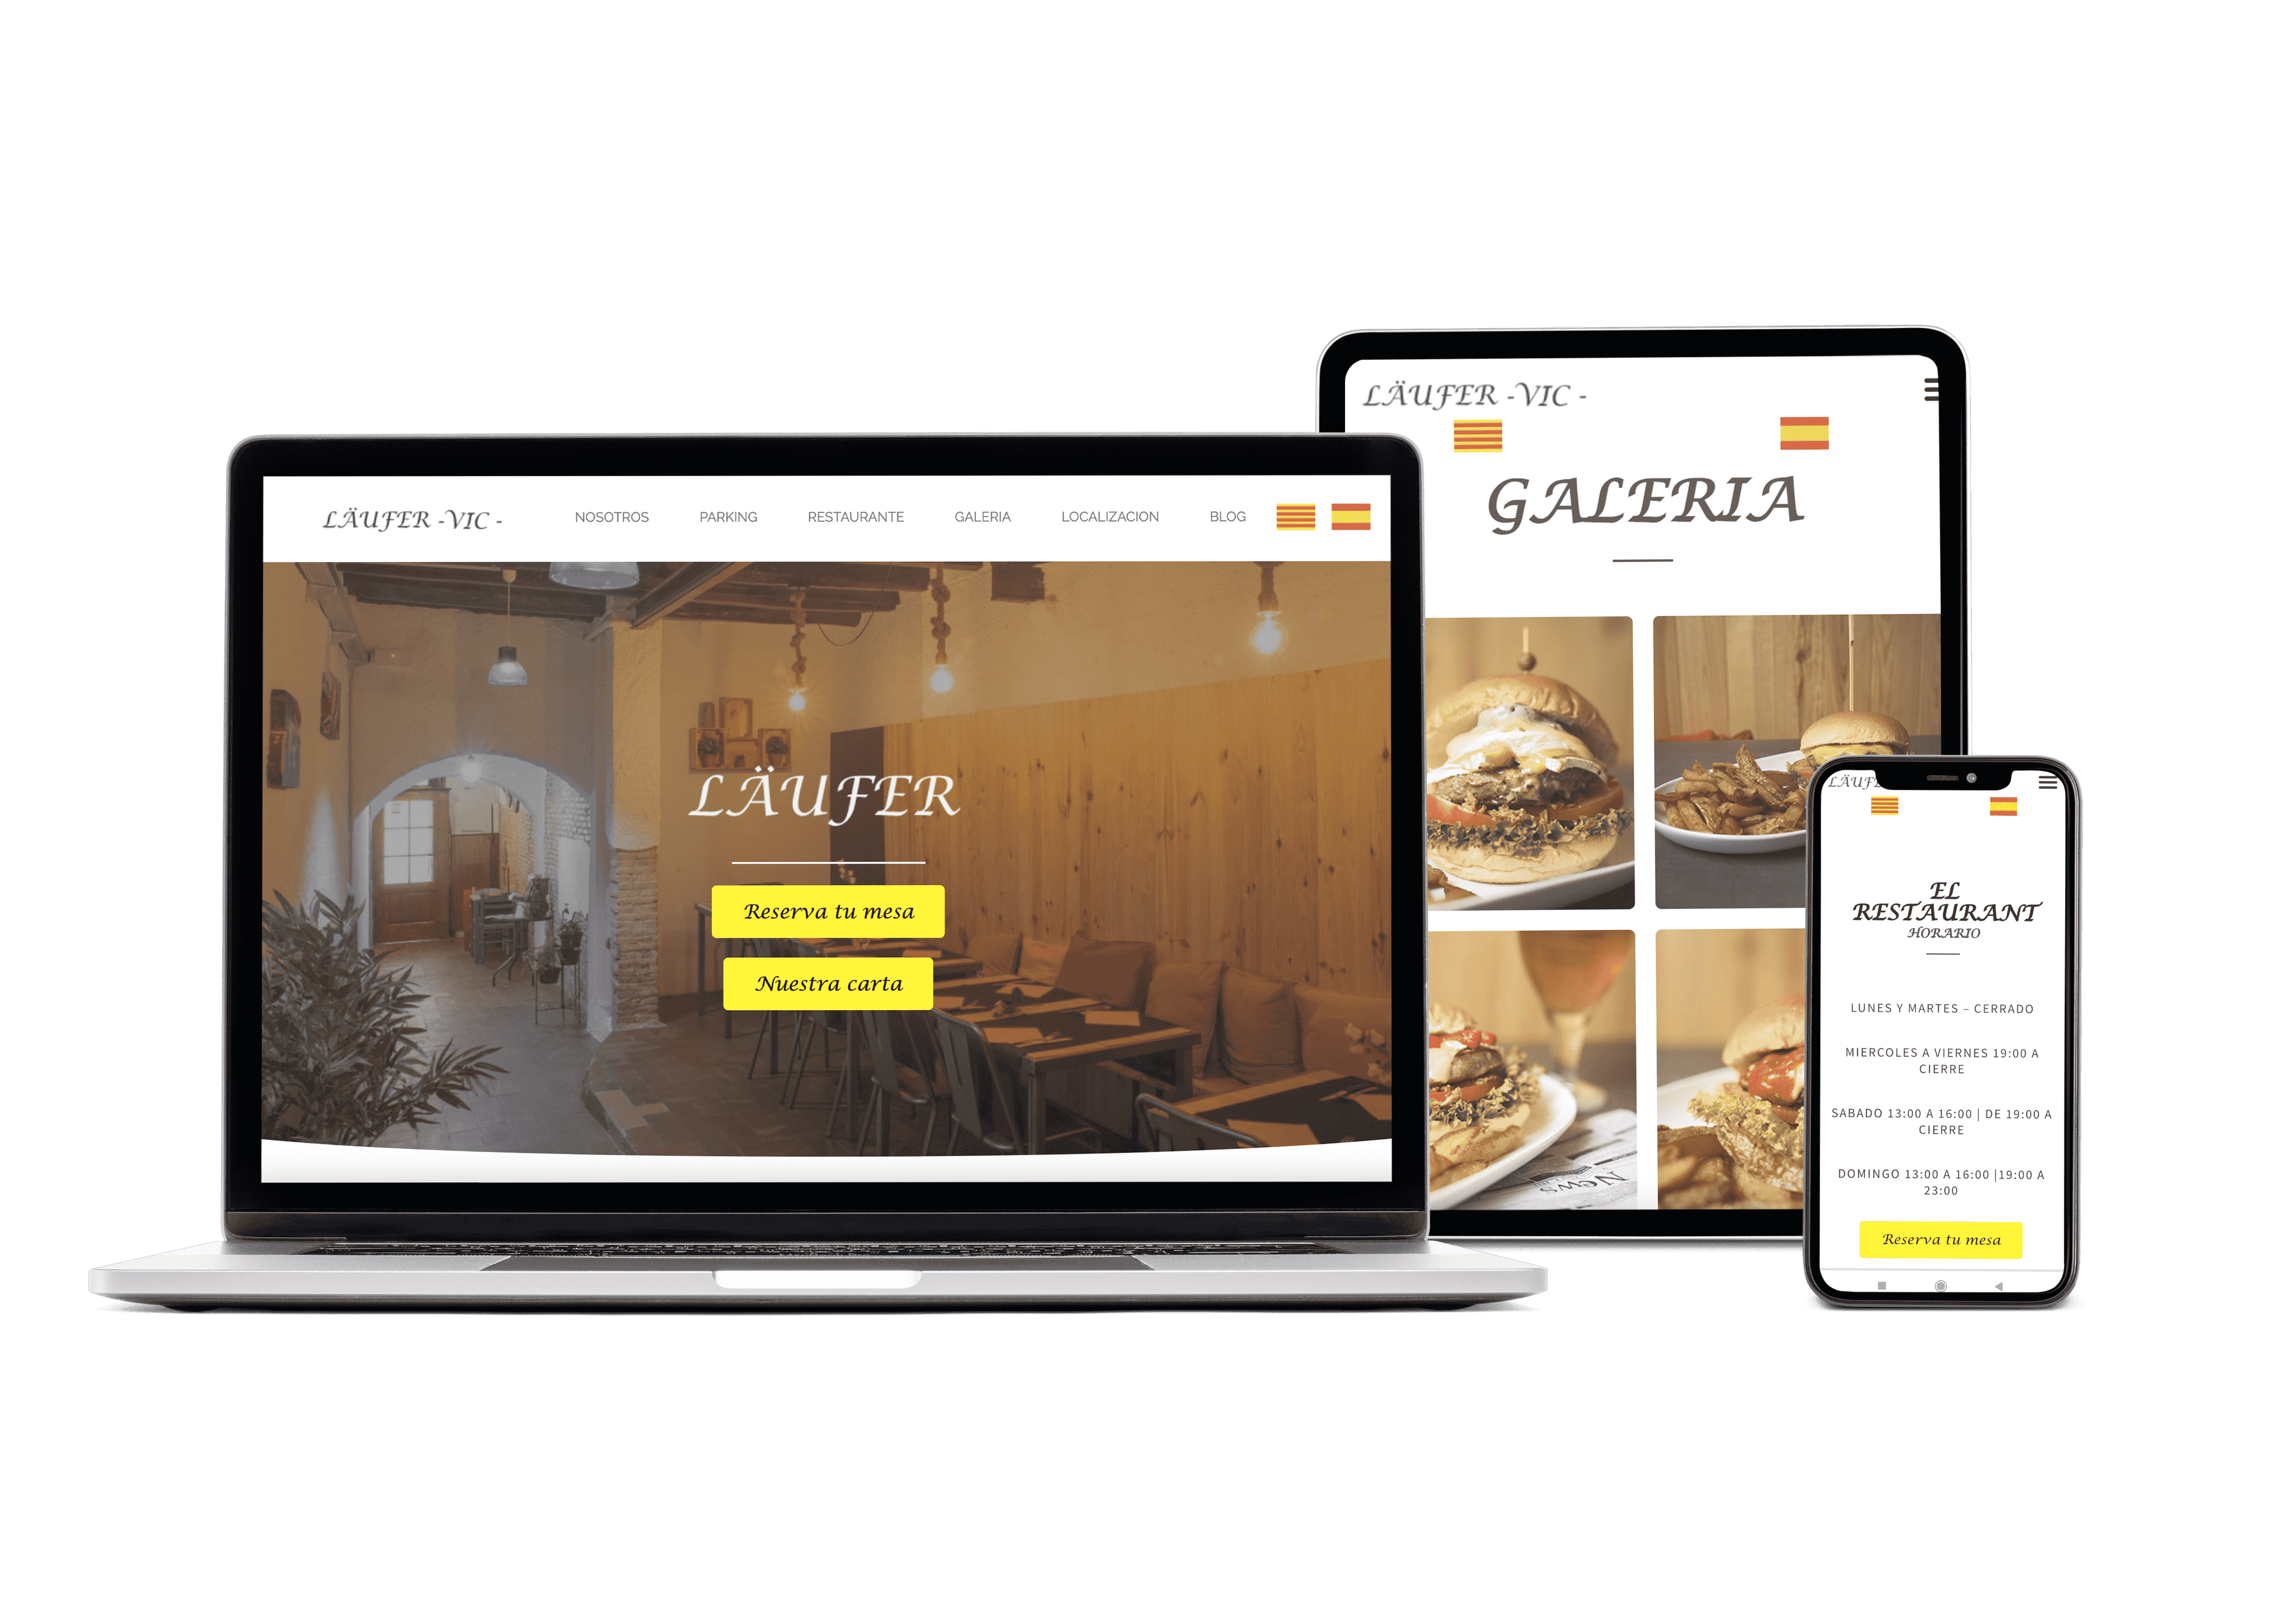 pagina-web-para-restaurante-laufer